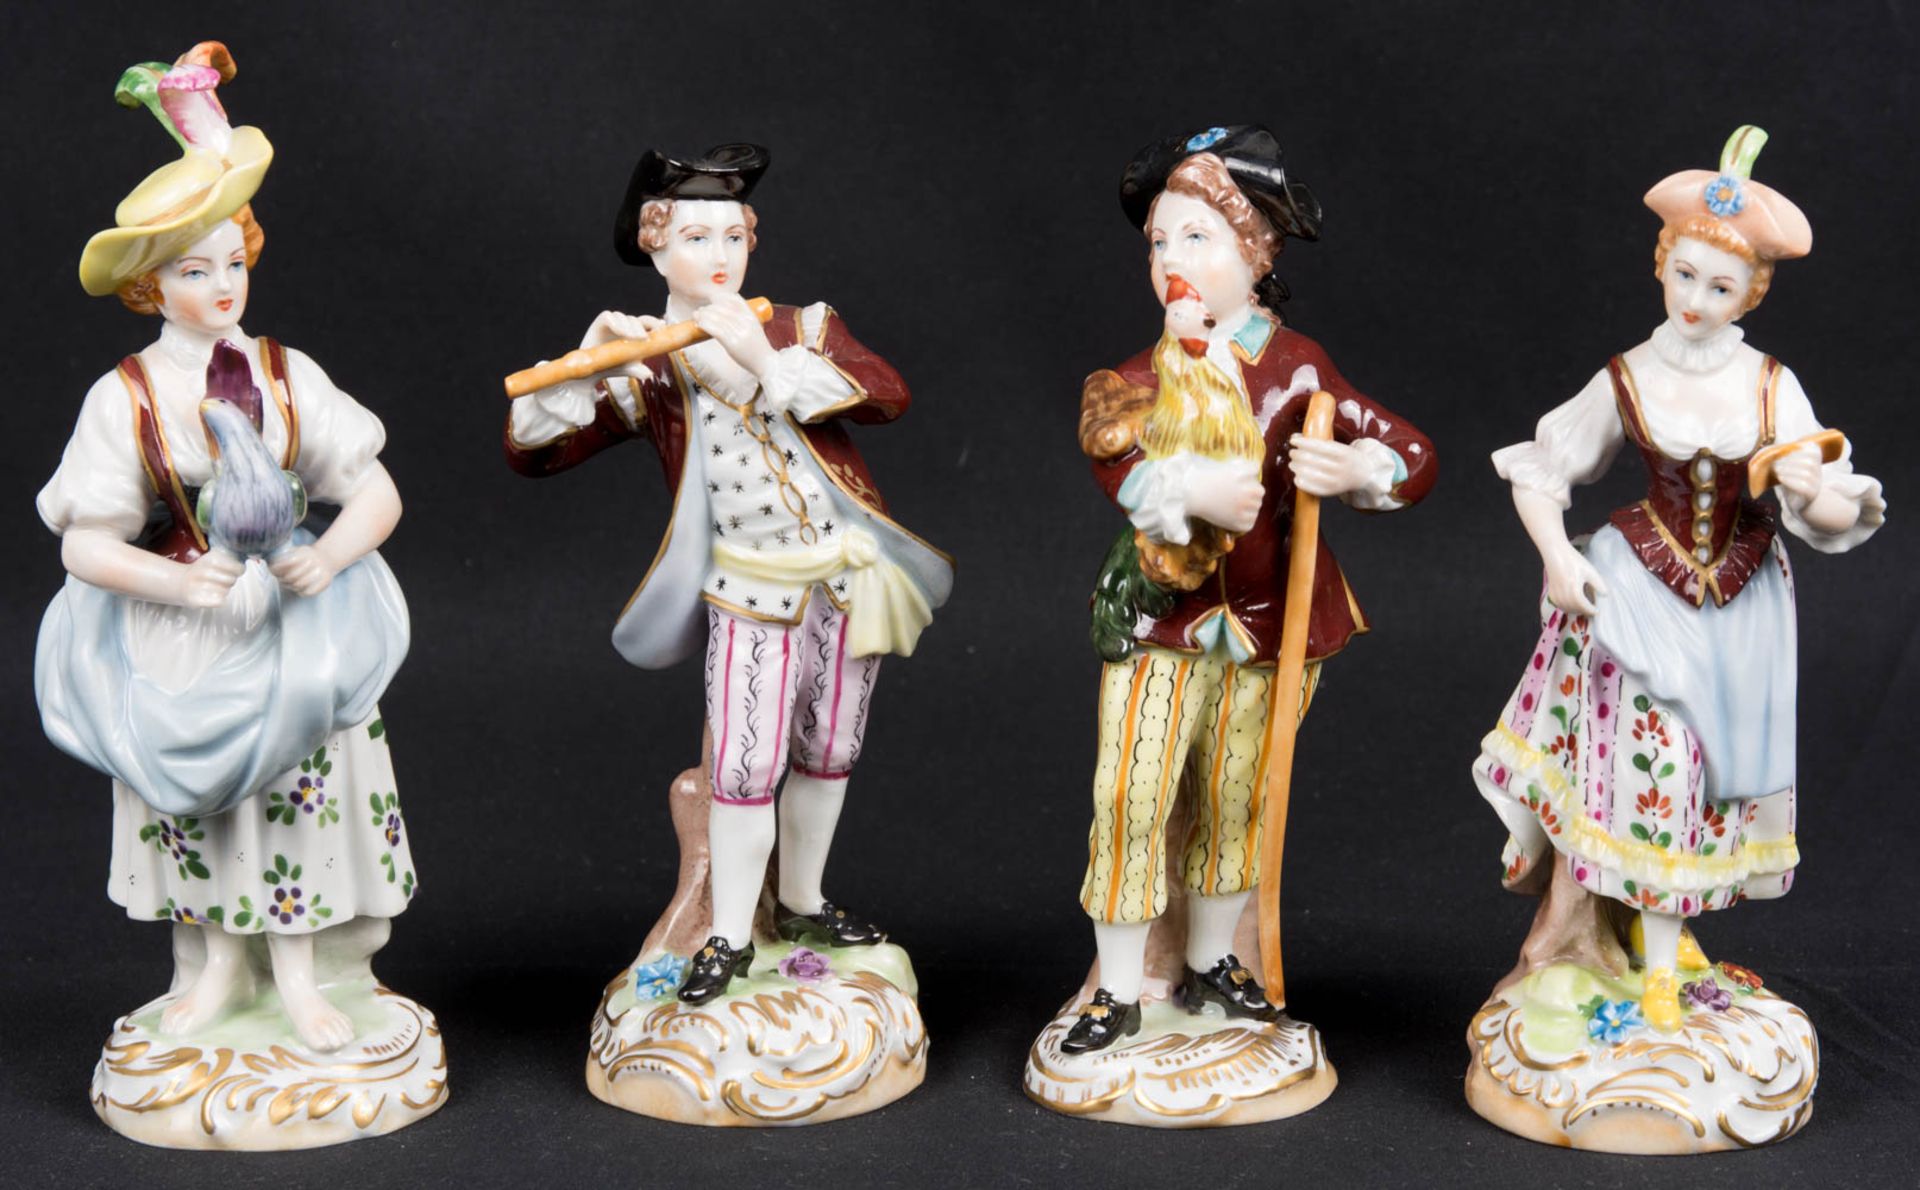 Ensemble von vier Figurinen der Sächsischen Porzellan-Manufaktur Dresden.